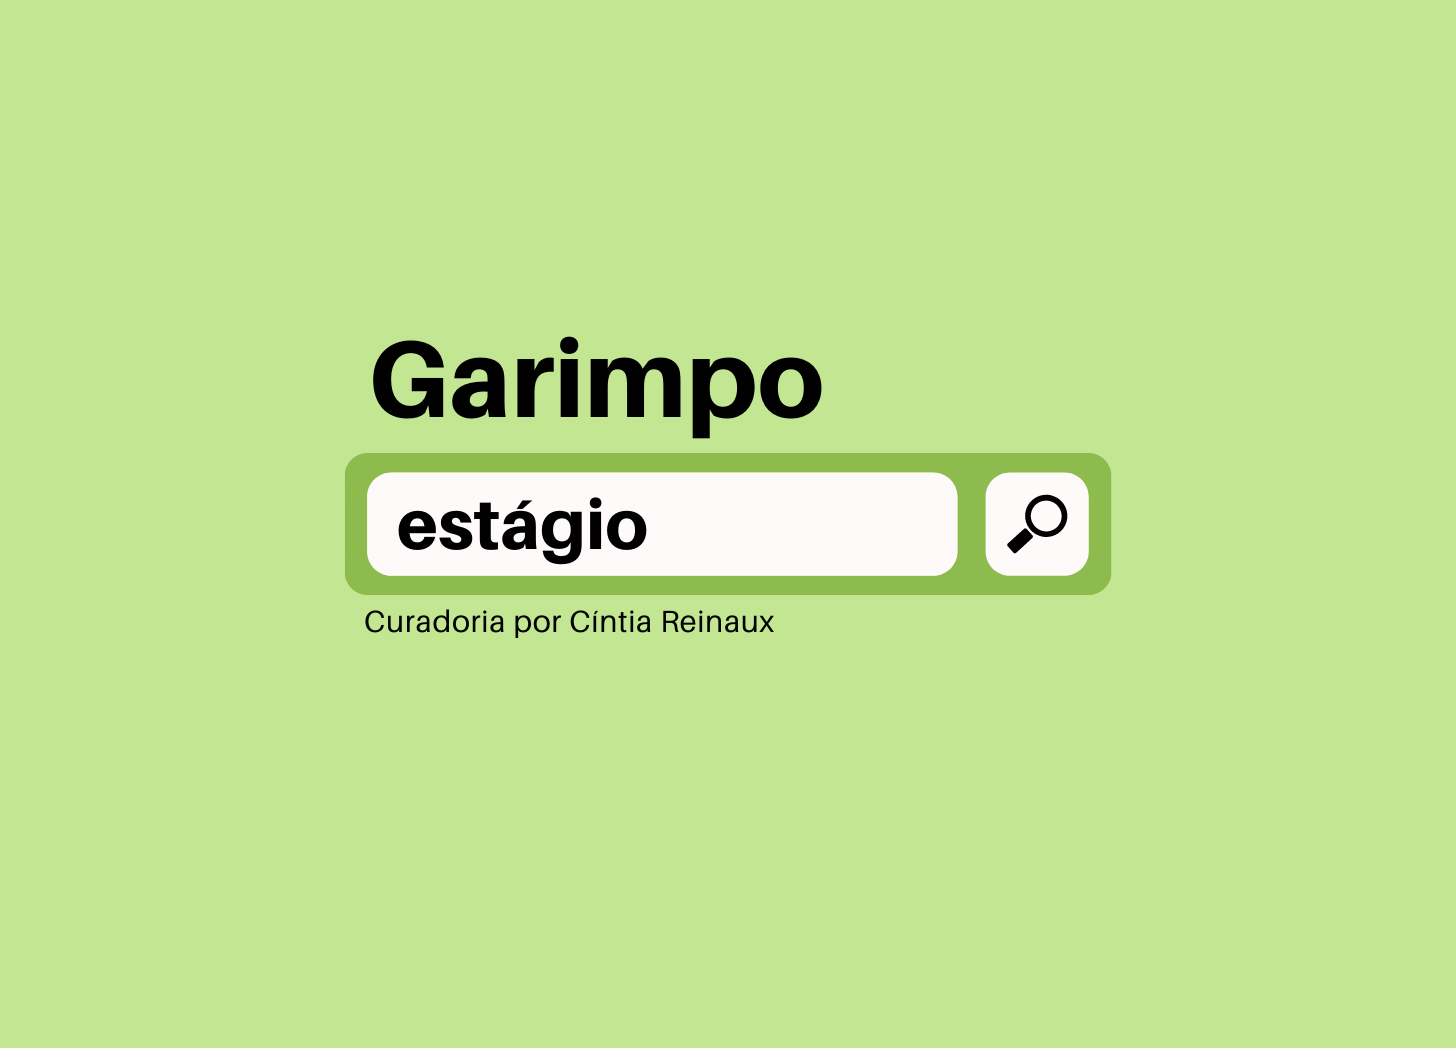 Fundo verde com barra de pesquisa no centro com o termo “estágio”. Acima, a palavra “Garimpo”. Abaixo, “Curadoria por Cíntia Reinaux”.